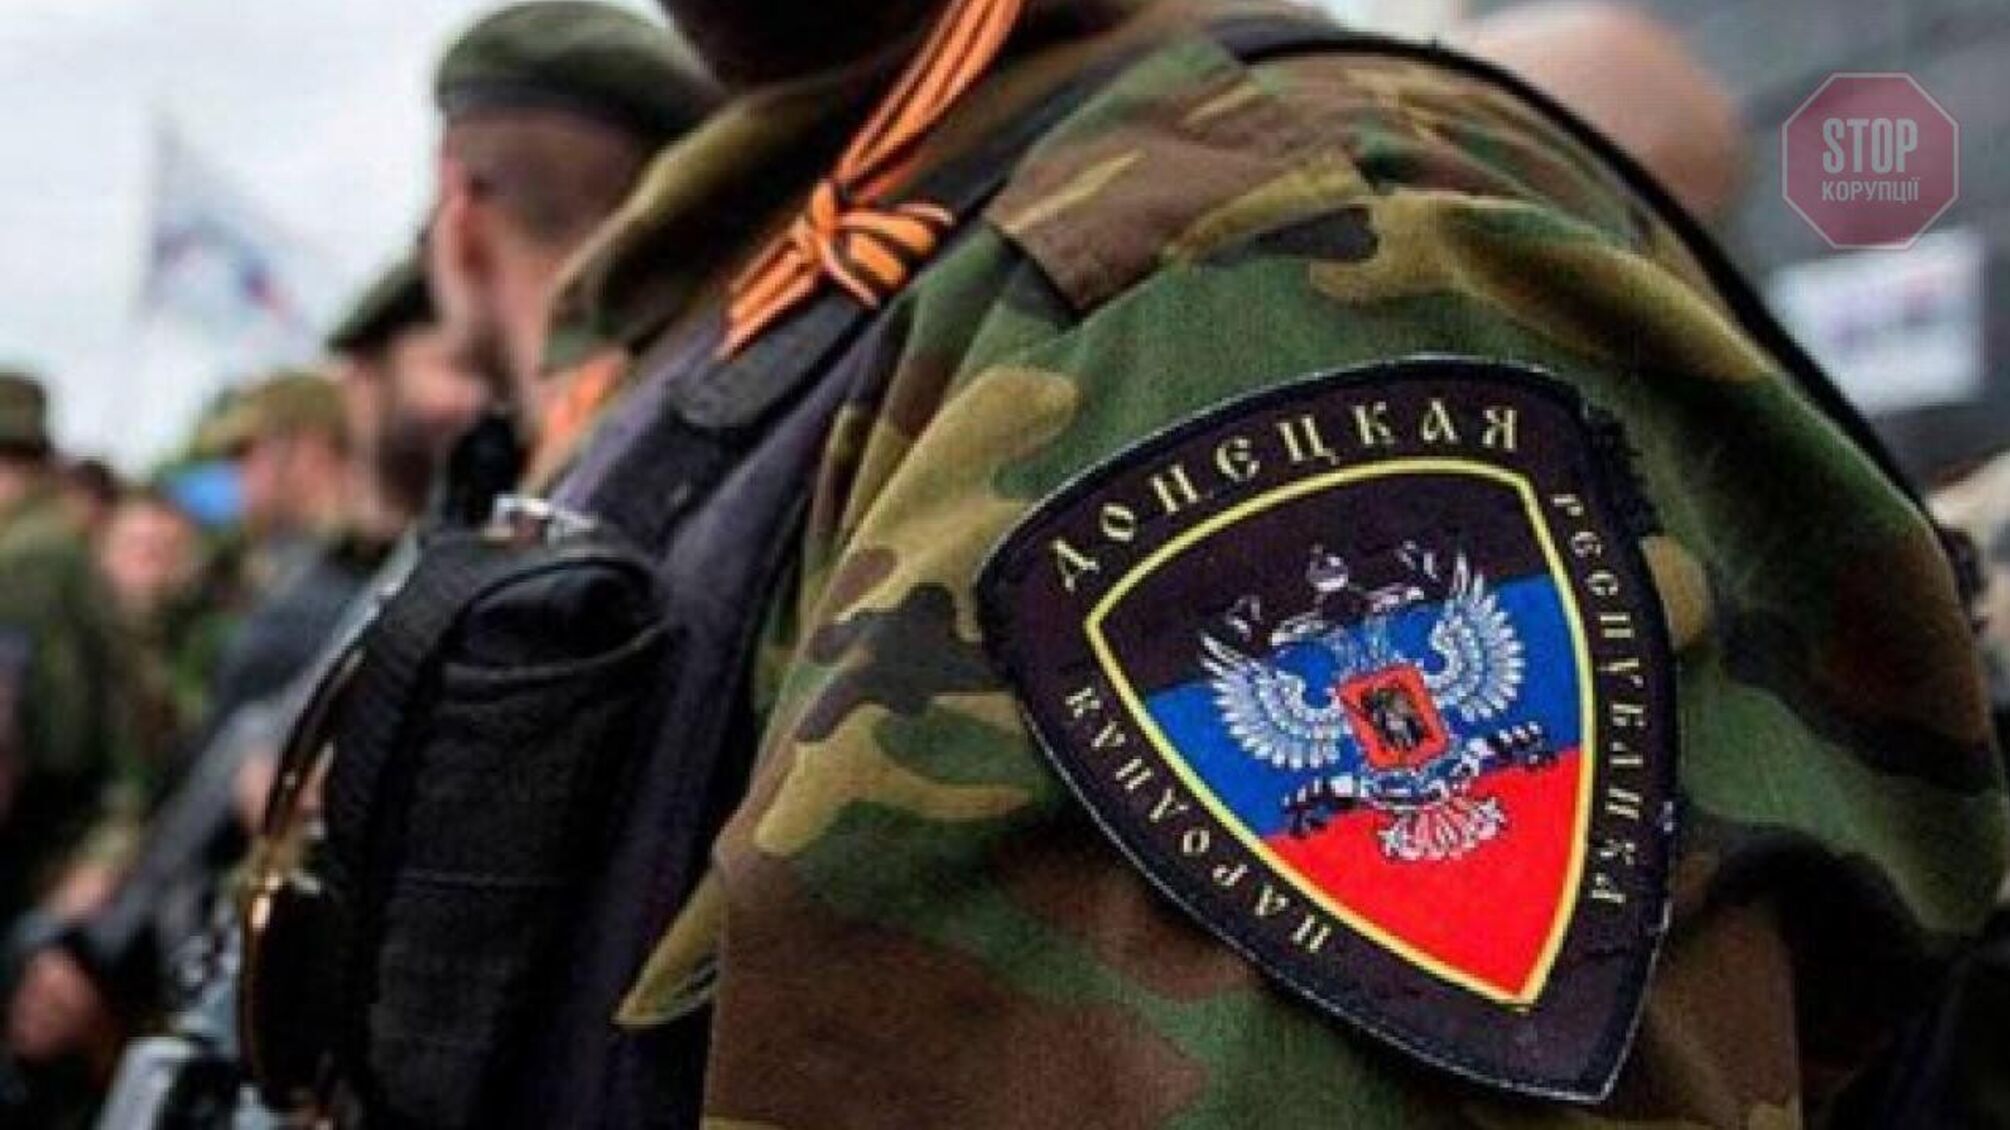 Боевики продолжают обстреливать позиции украинских военных, трое раненых